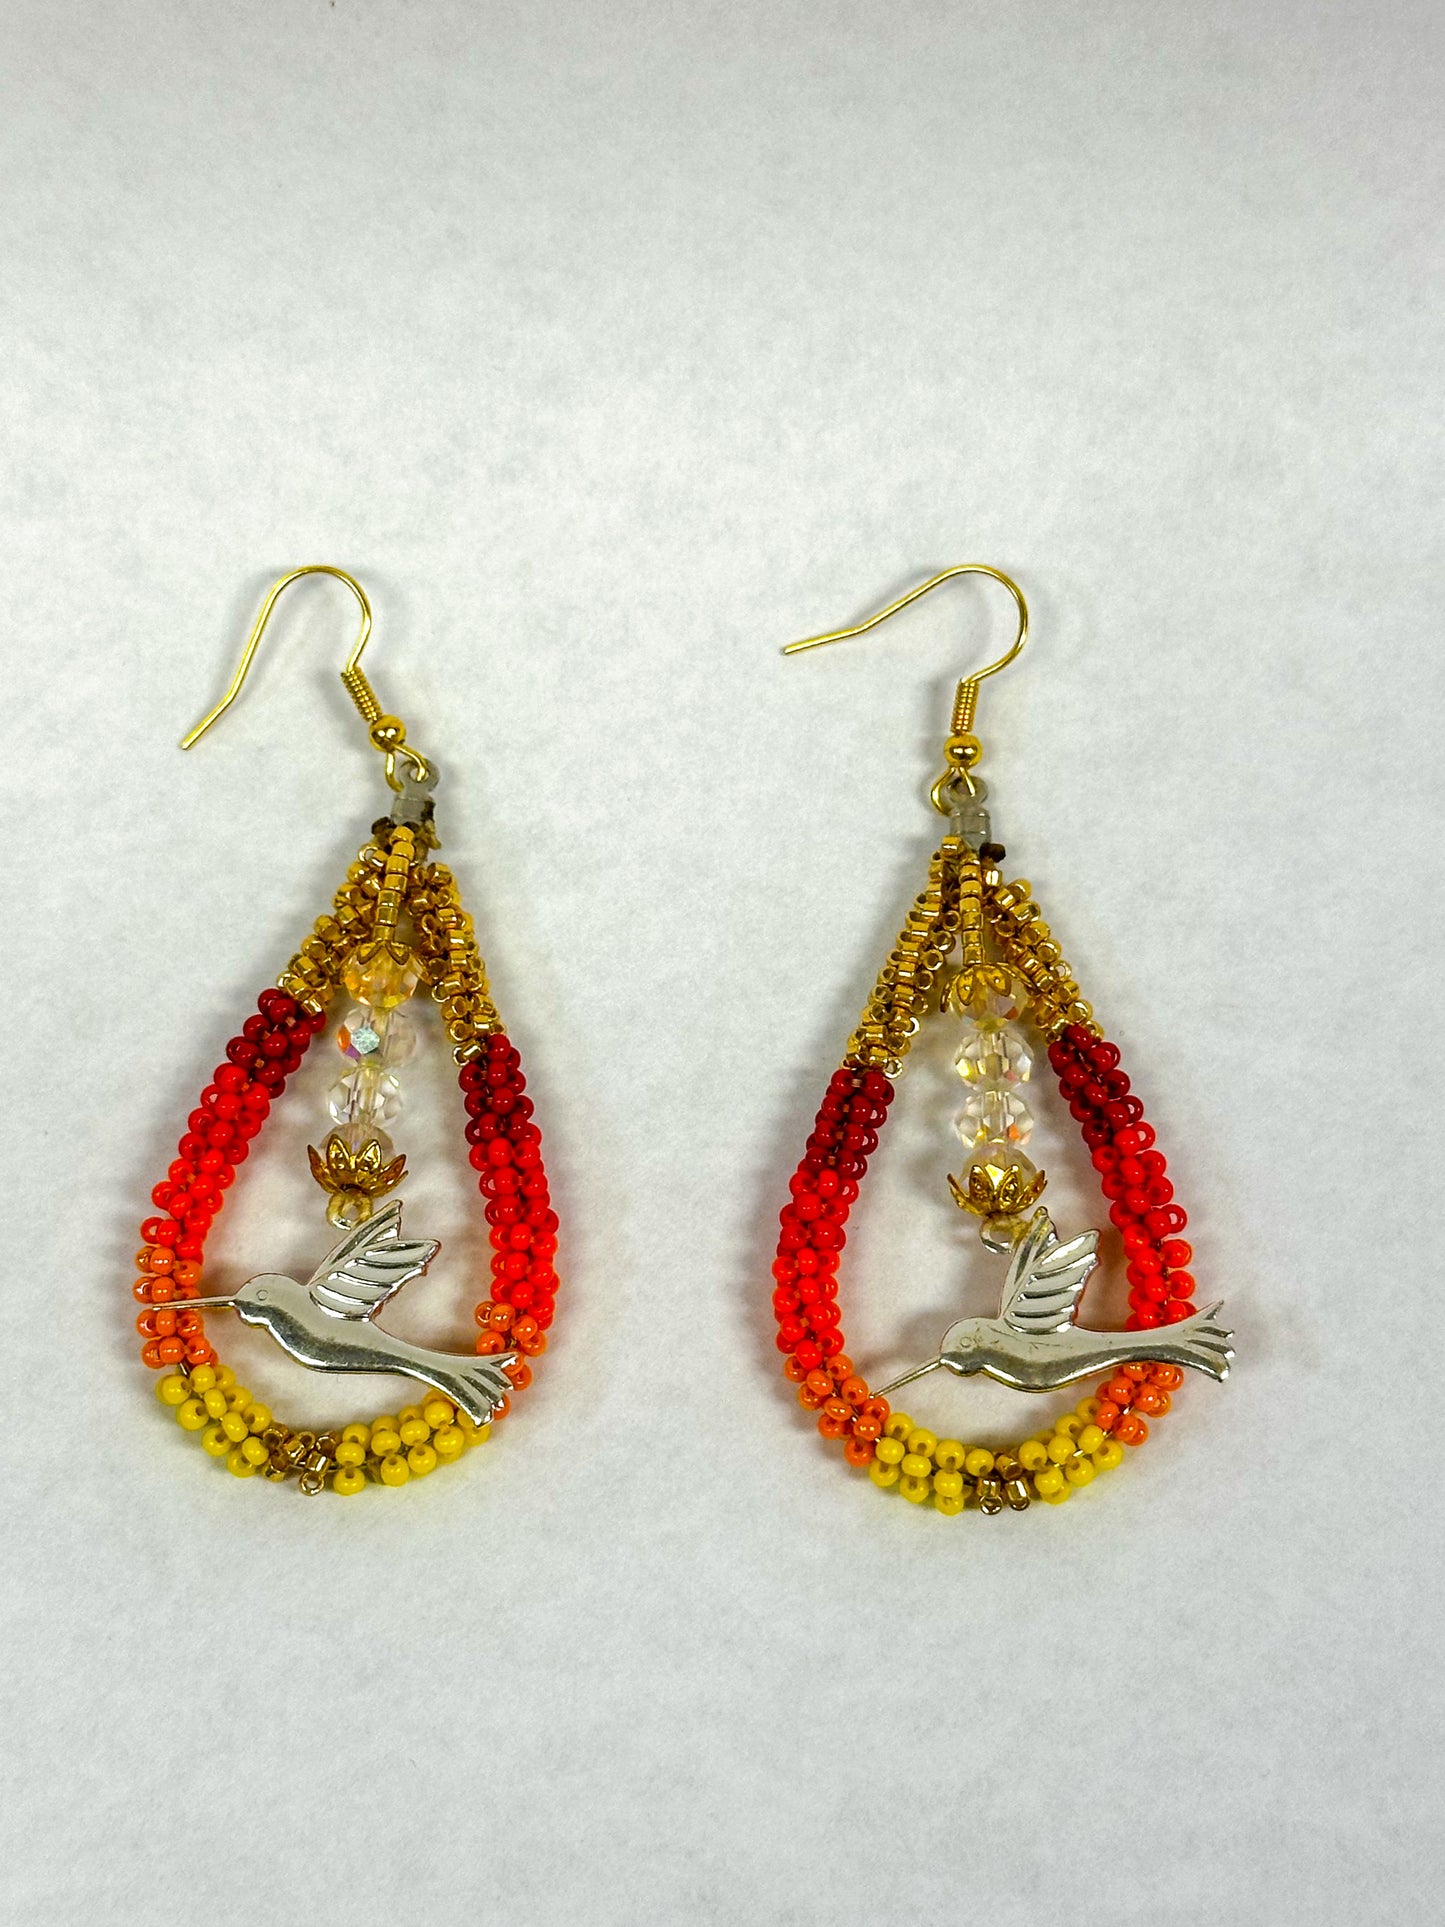 Hummingbird earrings